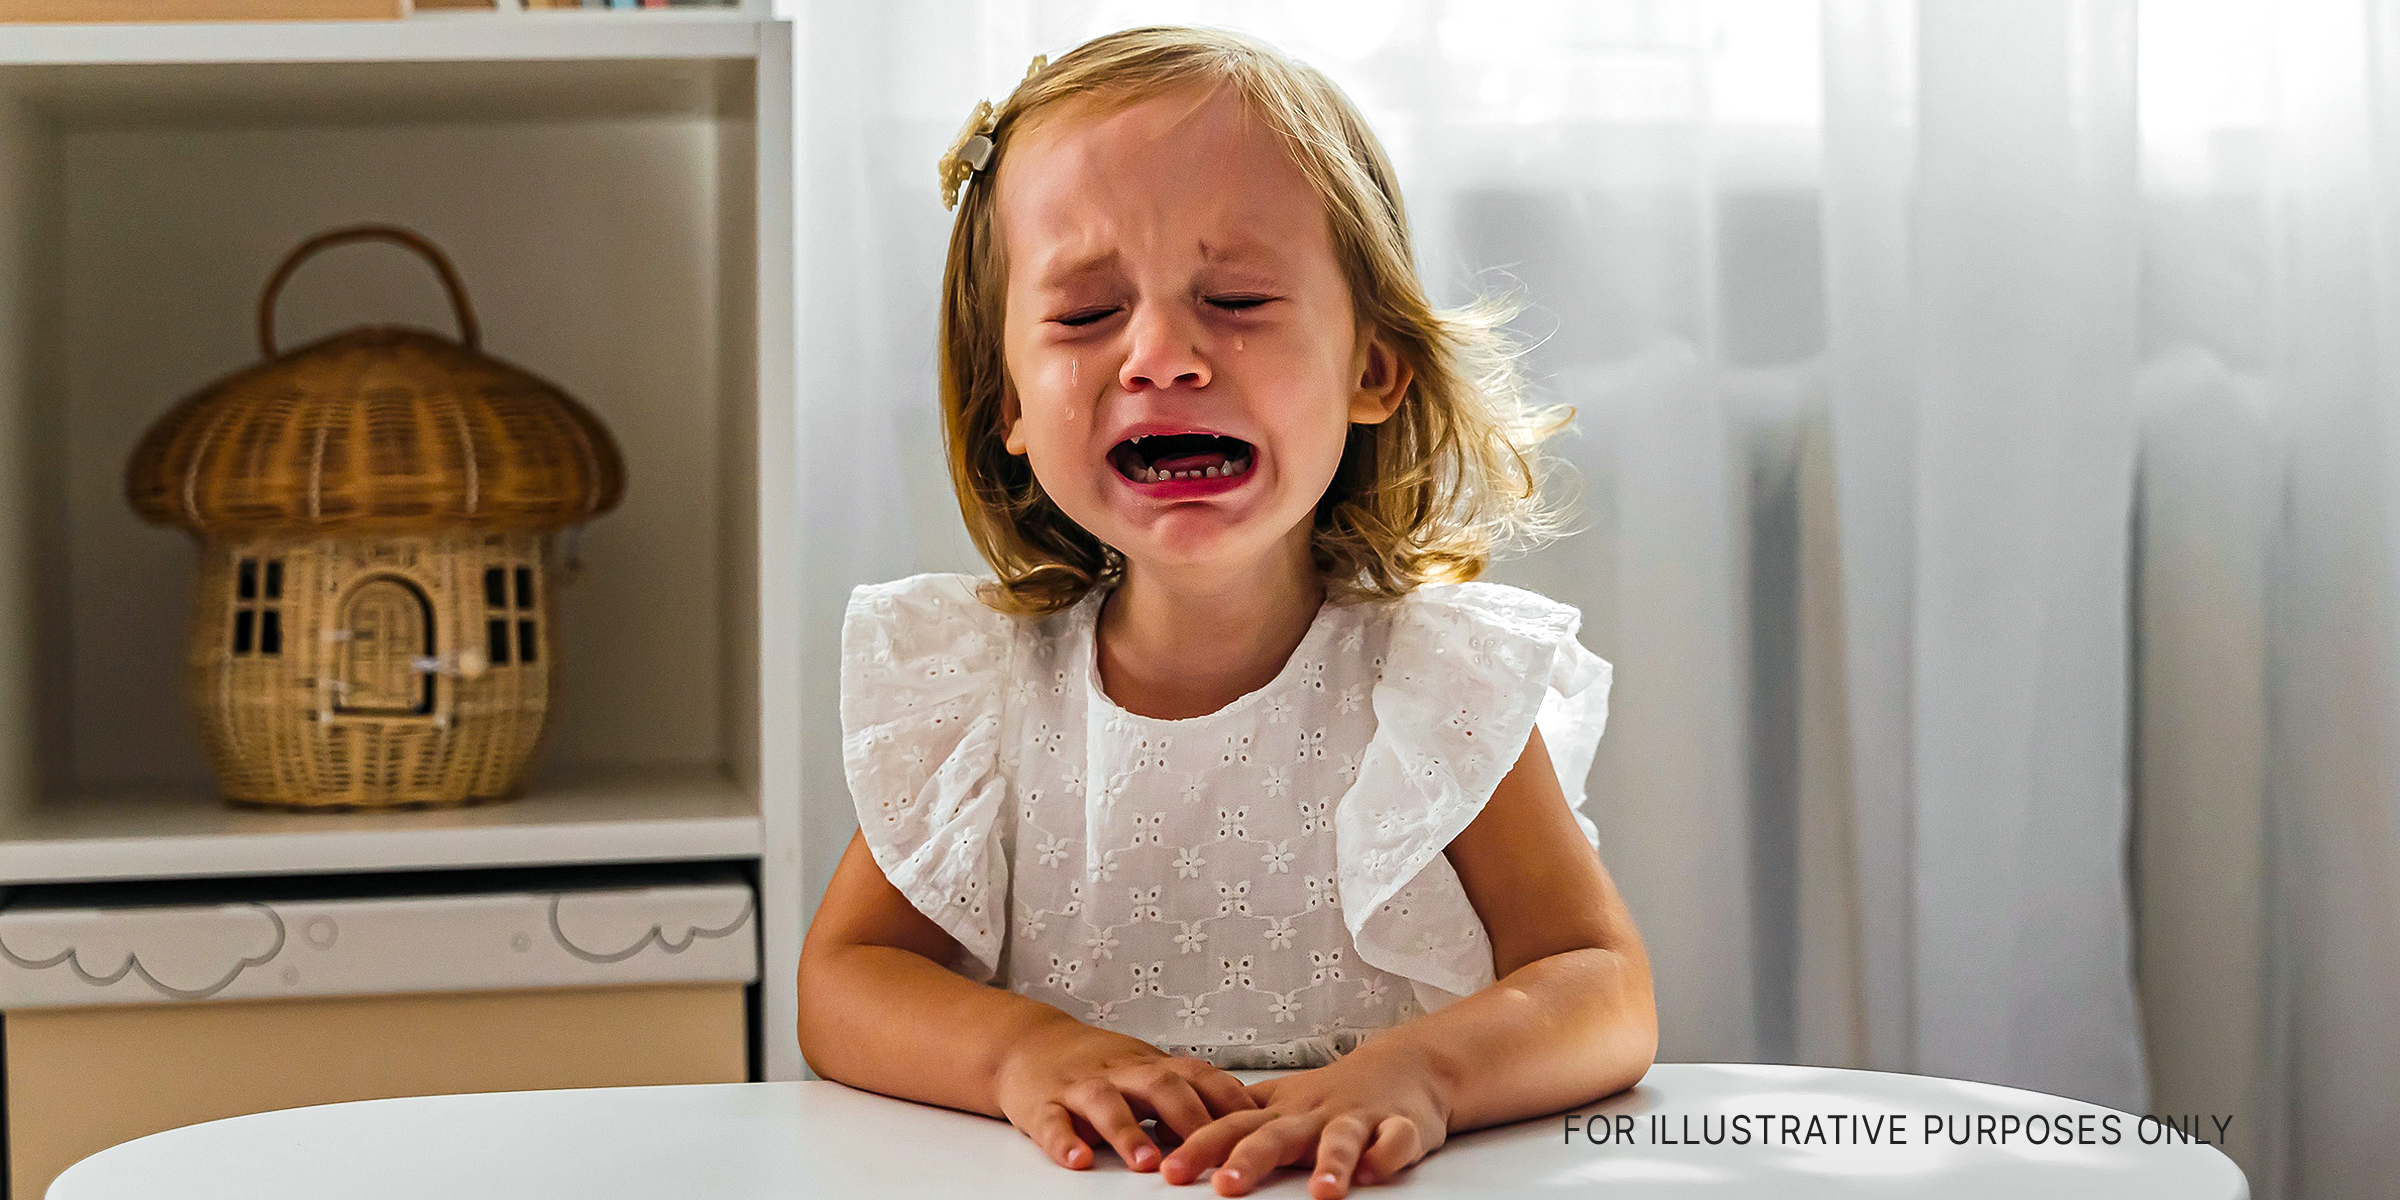 Ein kleines Mädchen weint | Quelle: Getty Images